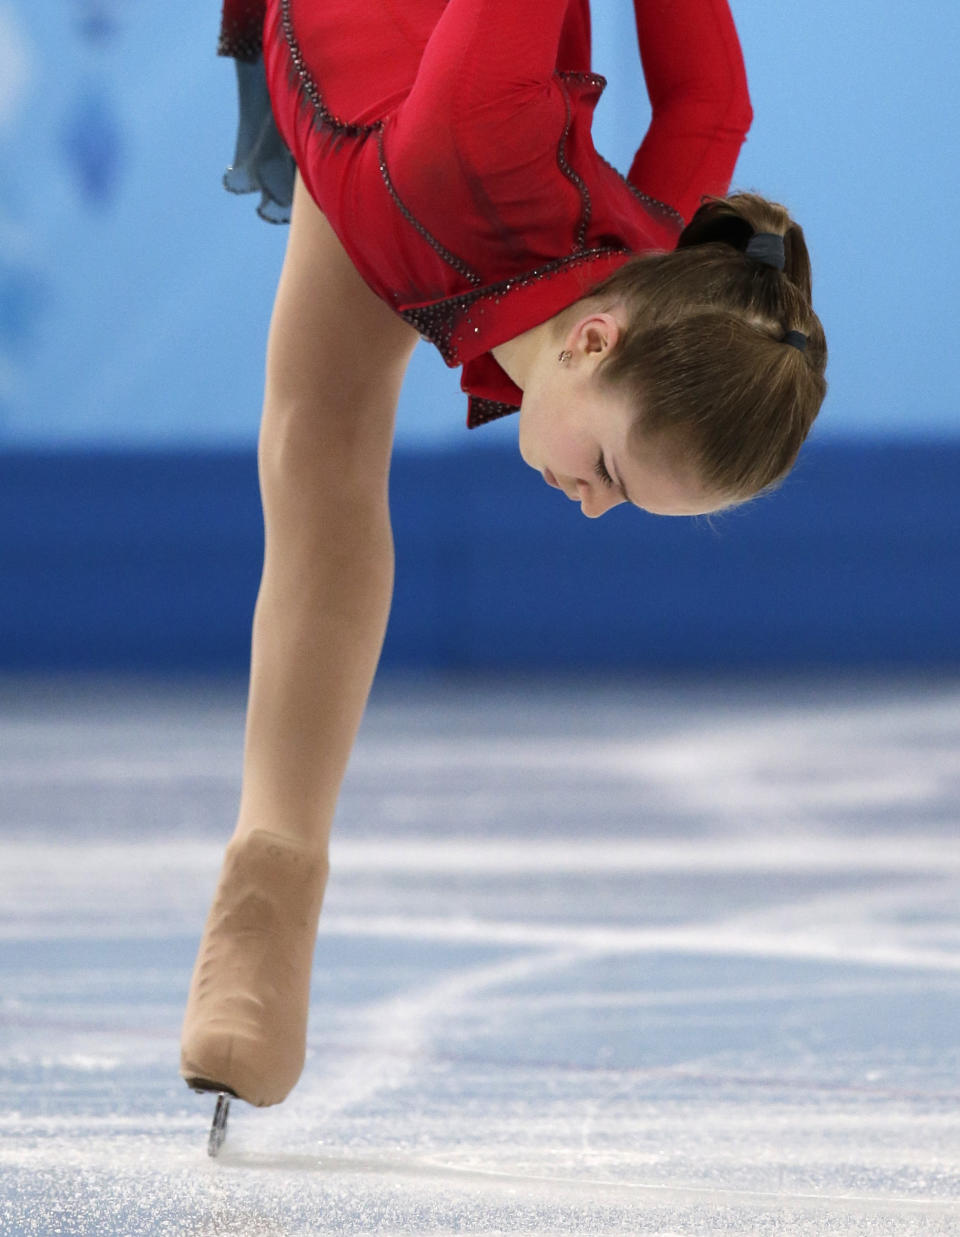 La rusa Julia Lipnitskaia compite en la prueba de equipos del patinaje artístico de los Juegos Olímpicos de Invierno, el domingo 9 de febrero de 2014, en Sochi, Rusia. (AP Foto/Bernat Armangue)